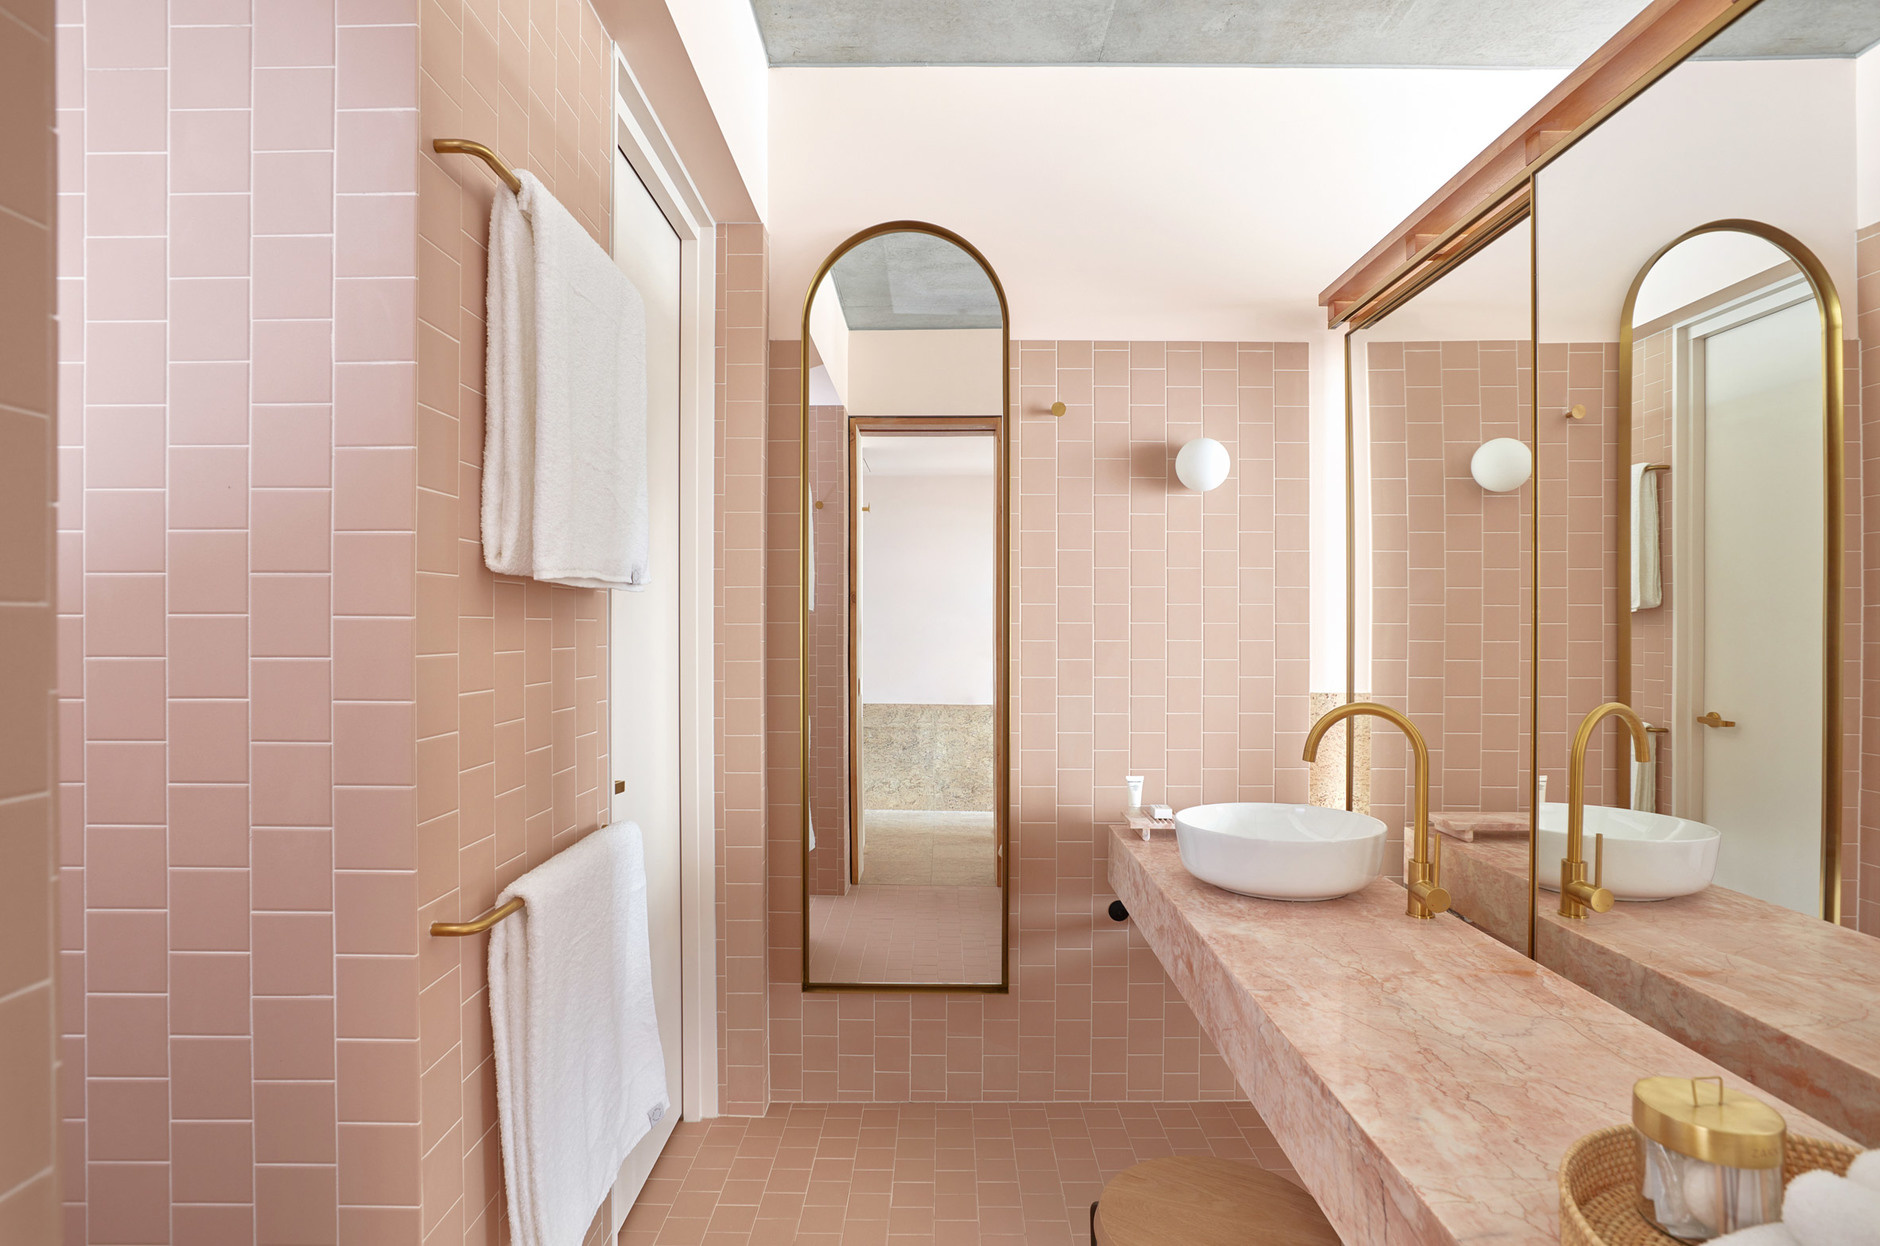 Phòng tắm thu hút bởi vẻ đẹp của những viên gạch hồng vuông vức ốp lát tường và sàn nhà, thêm vào mặt bàn bồn rửa bằng đá với màu sắc 'tone sur tone' ấn tượng.